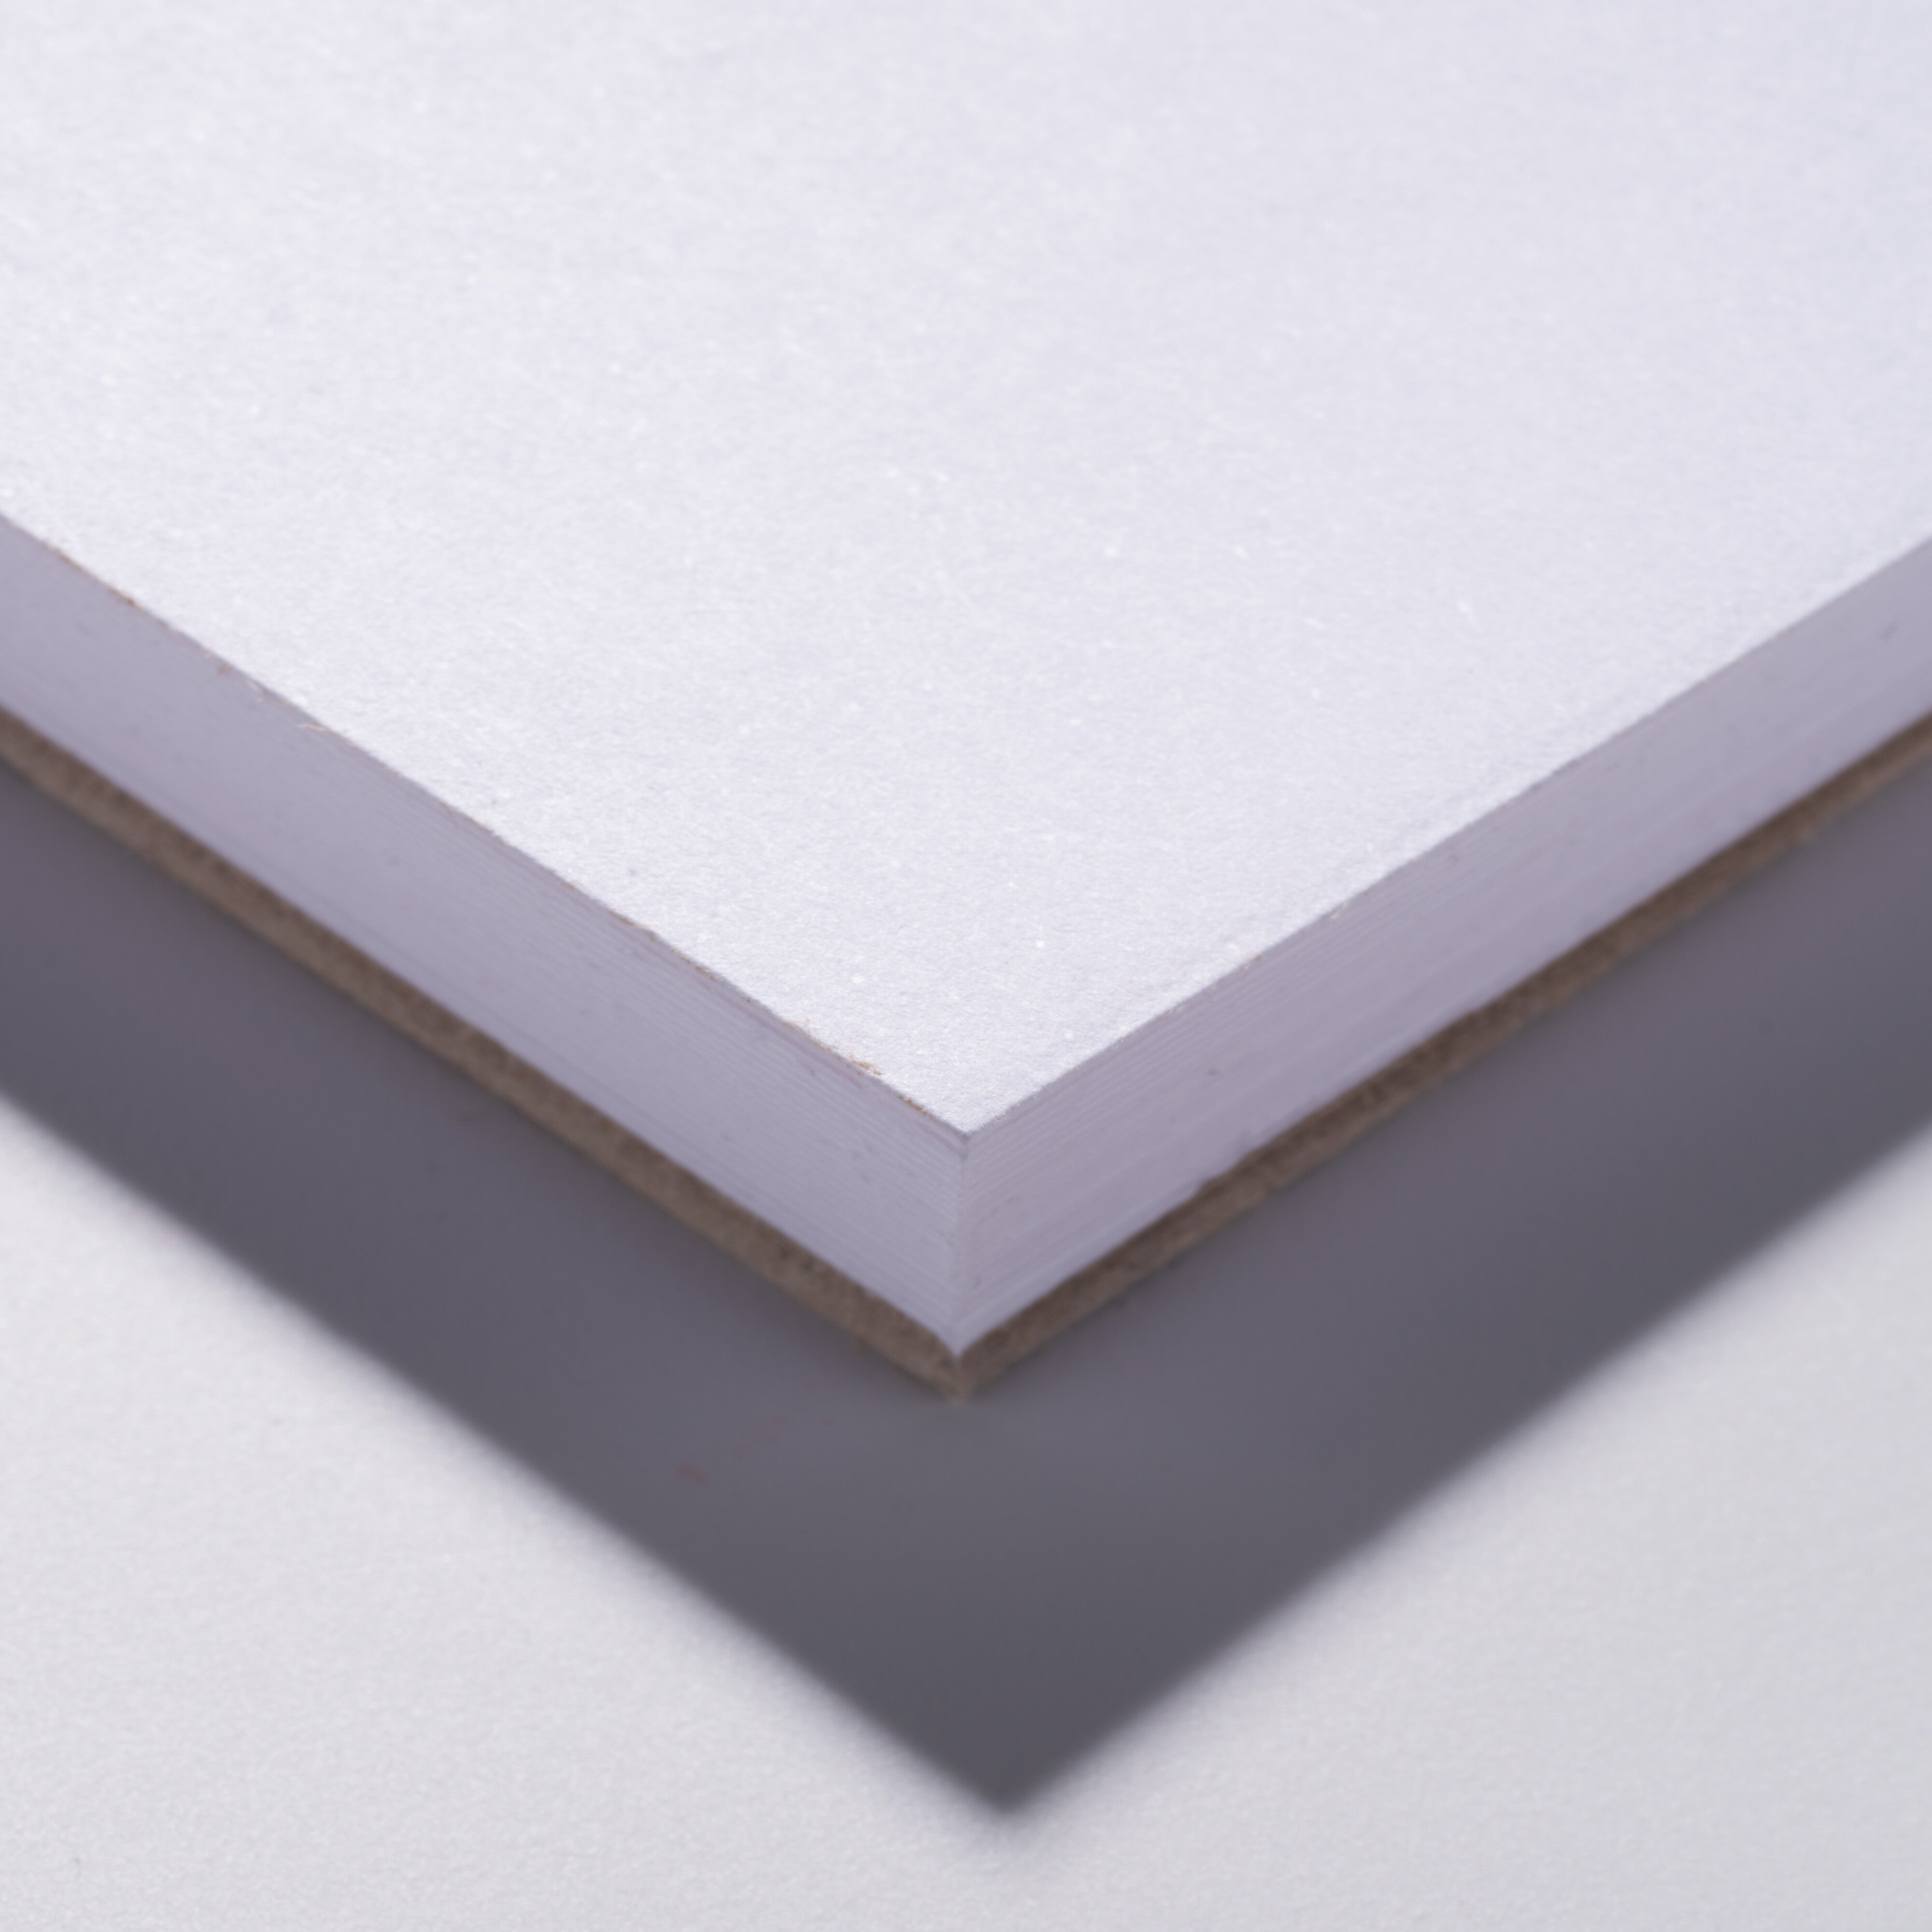 Talens, Pantone art pad A4 (21 x 29.7 cm / 8.3” x 11.7”), 20 sheets